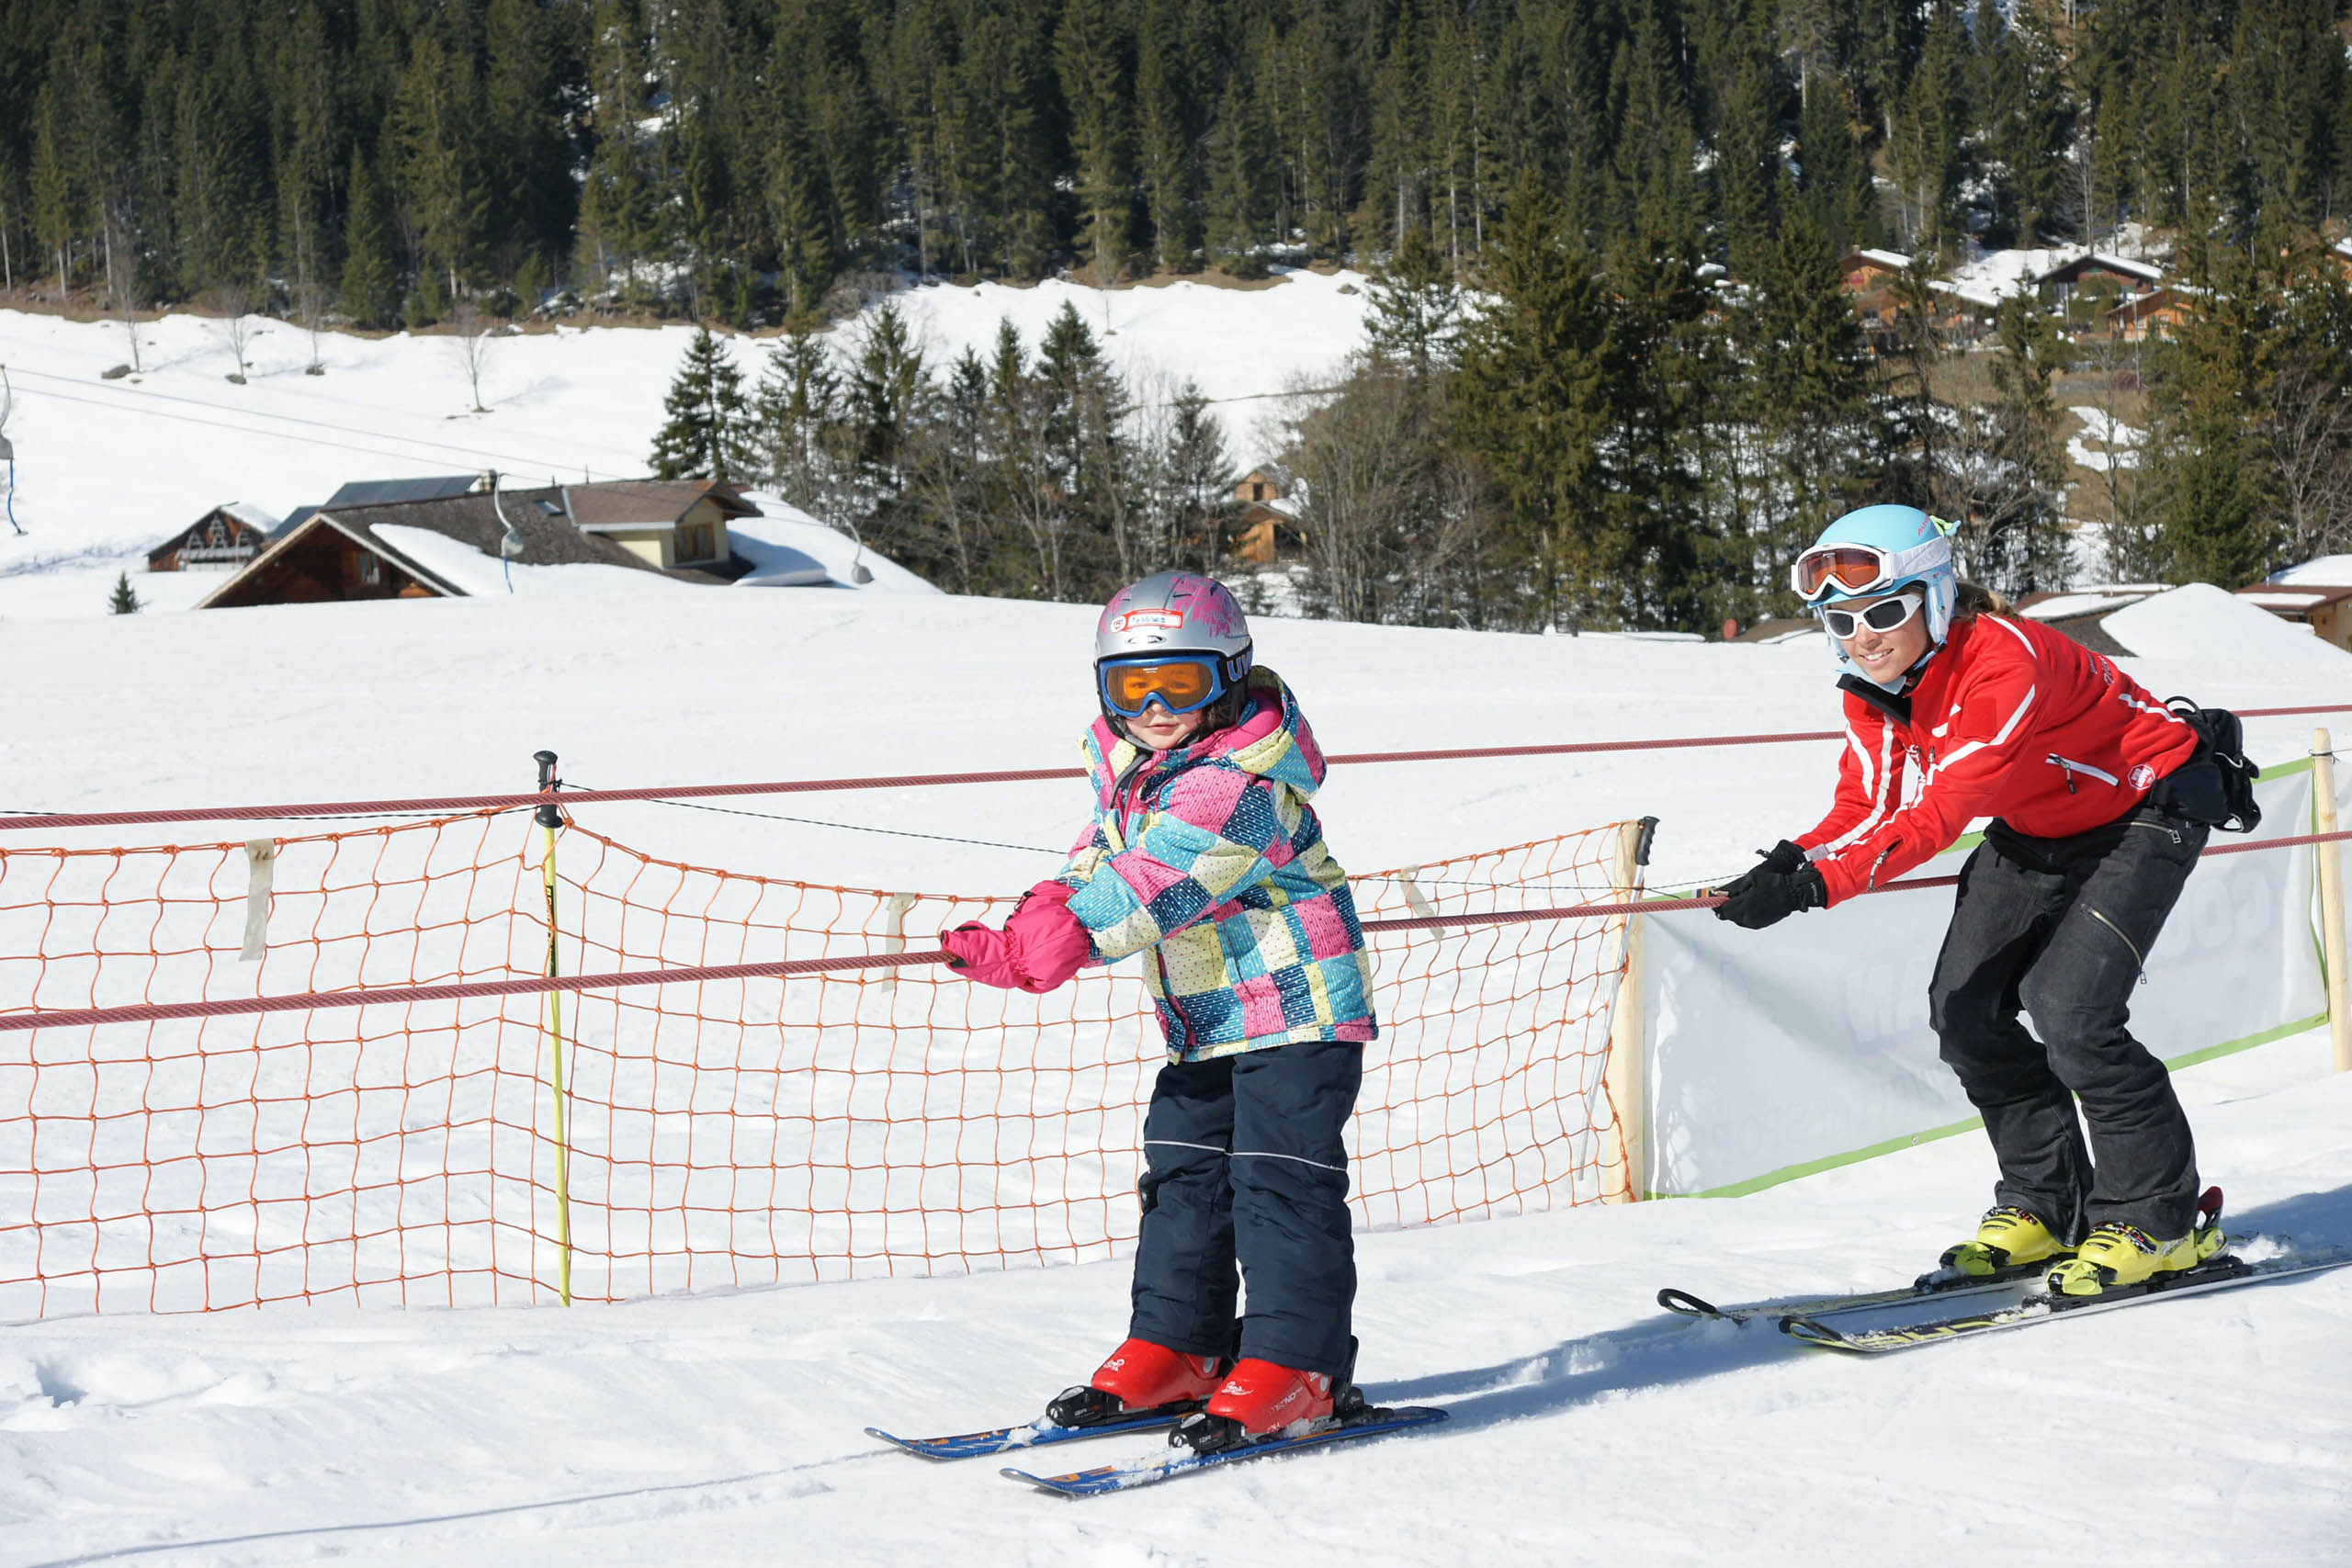 diemtigtal-grimmialp-winter-skischule-seillift-kinder